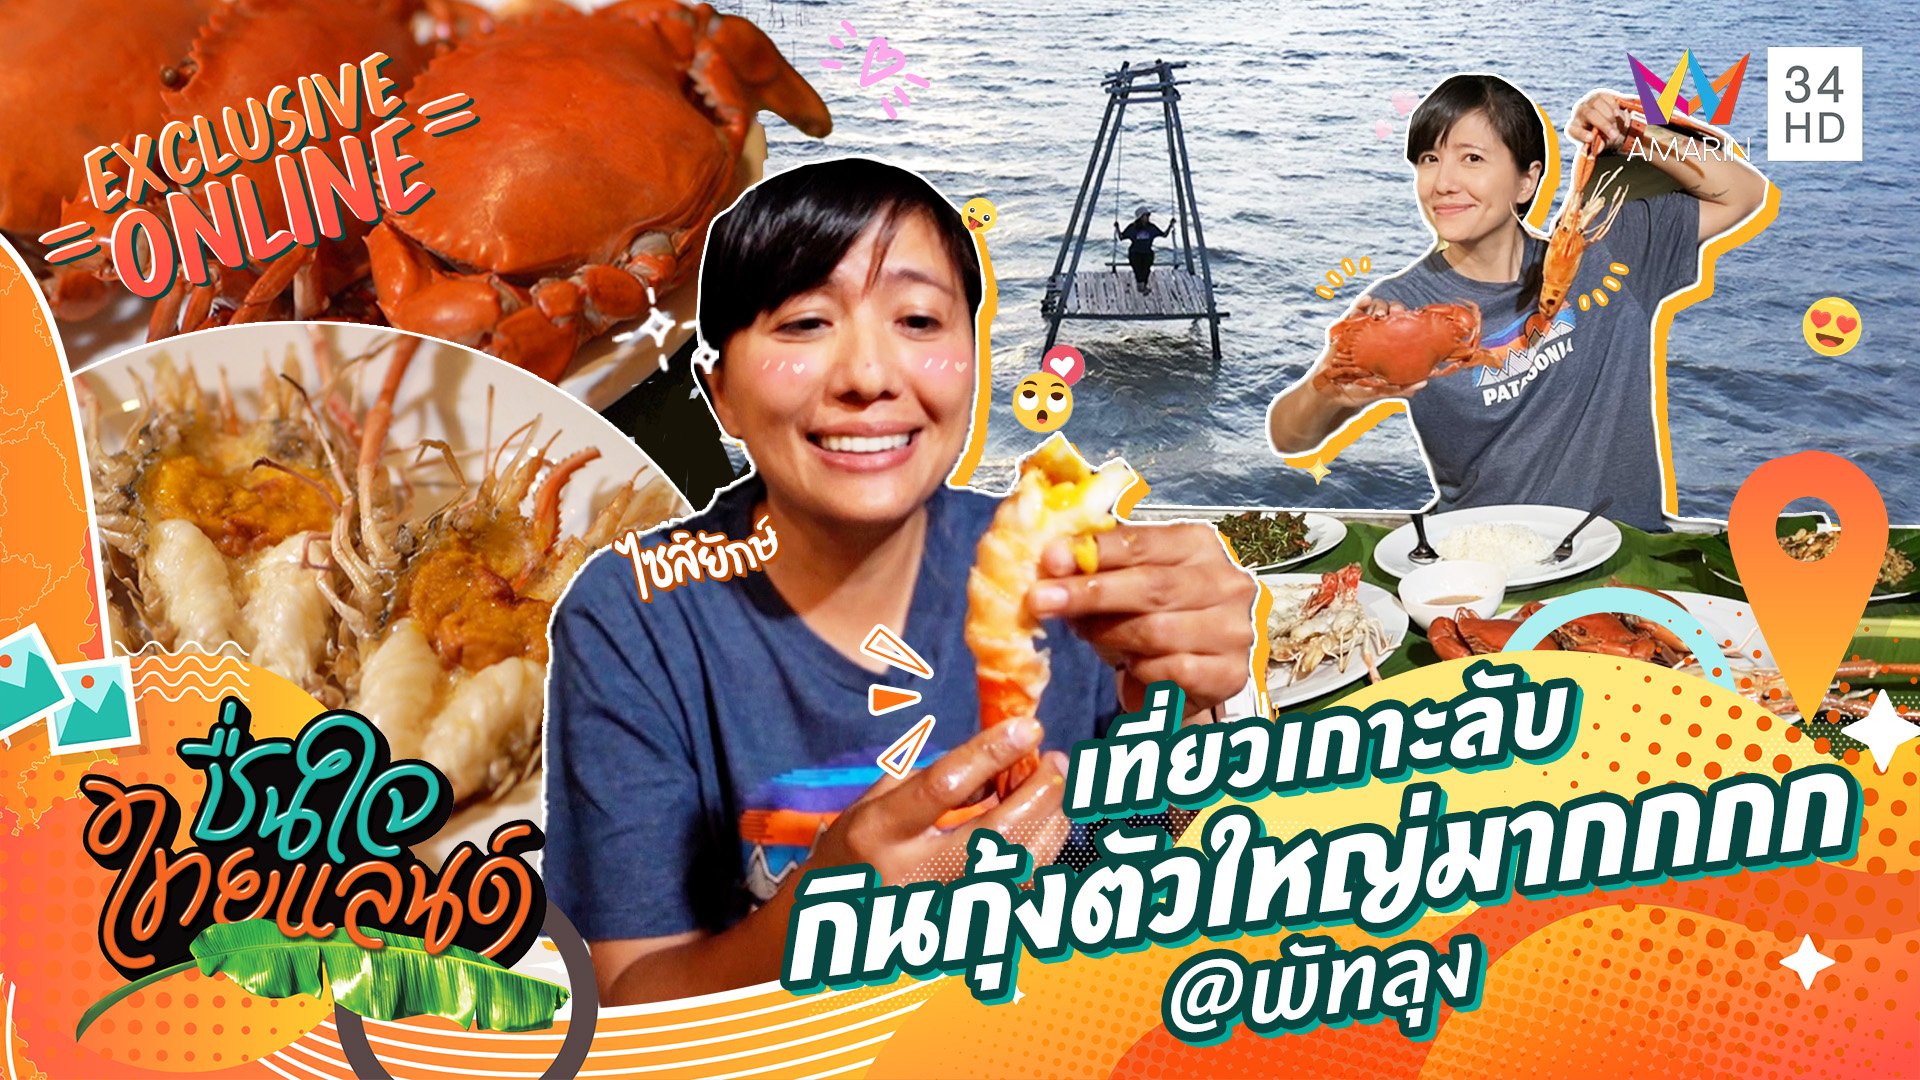 เที่ยวเกาะลับ กินกุ้งตัวใหญ่มากกกก @พัทลุง | ชื่นใจไทยแลนด์ | 12 ต.ค. 65 | AMARIN TVHD34